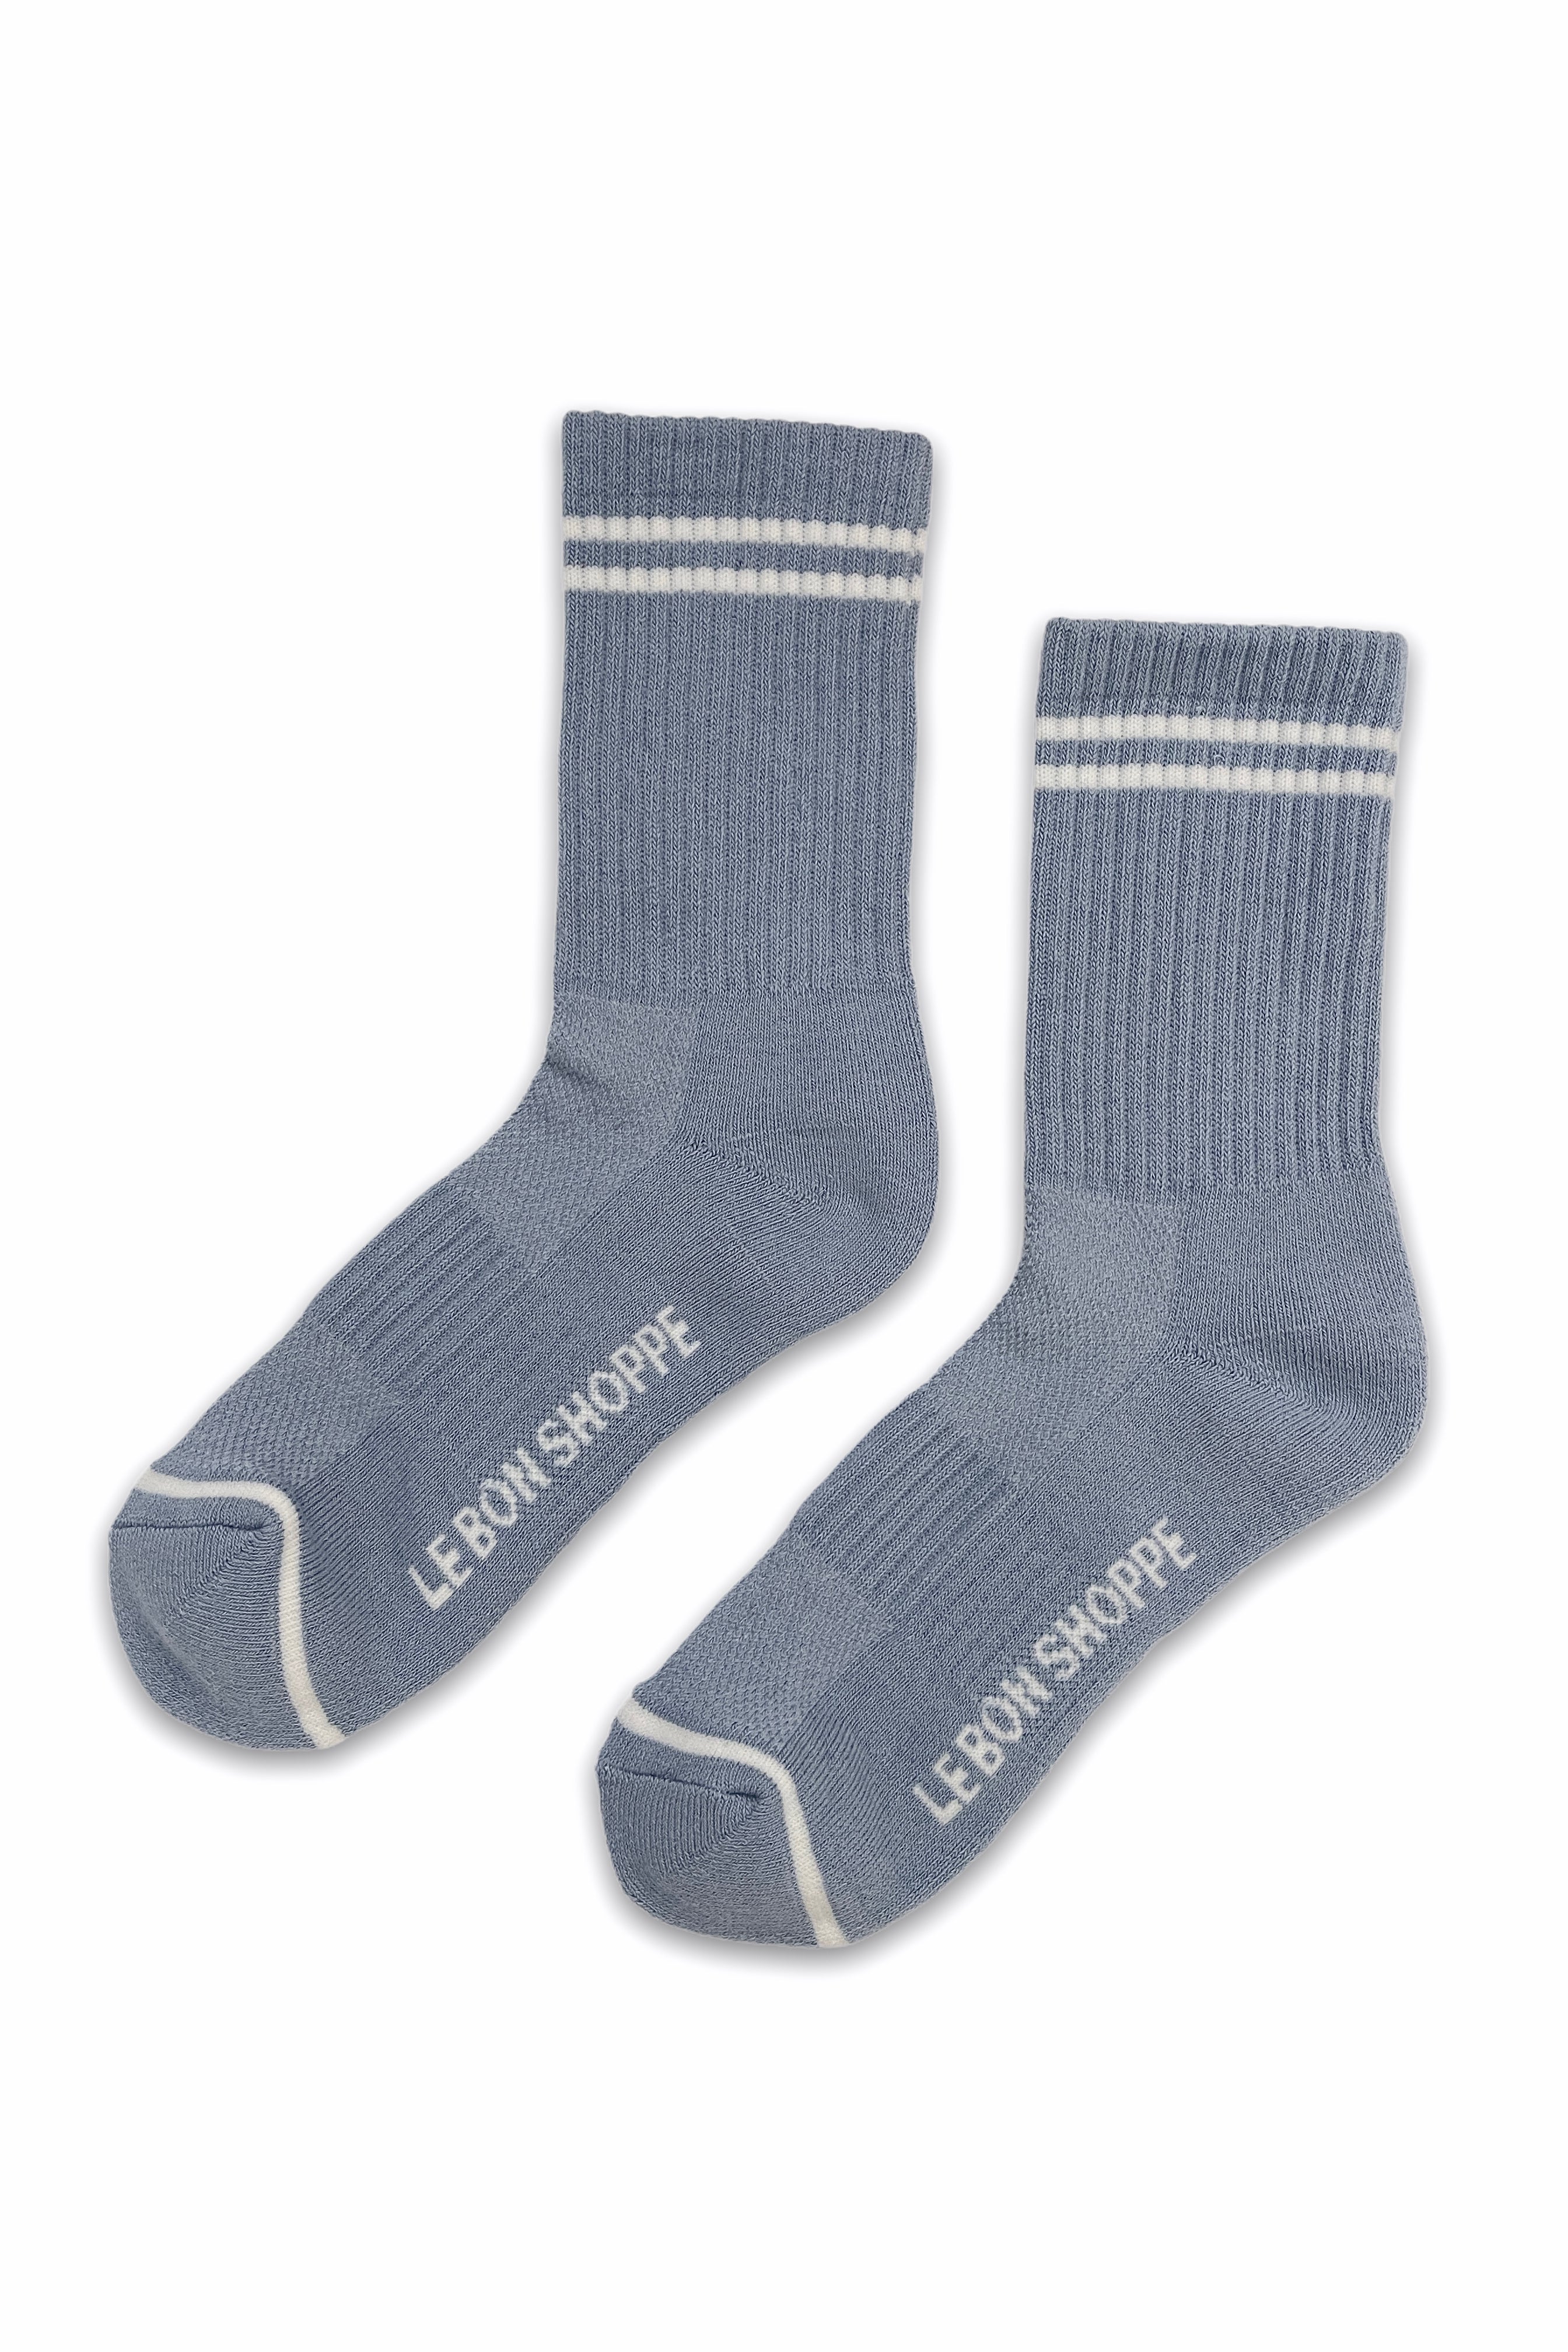 Boyfriend Socks | Blue Grey | by Le Bon Shoppe - Lifestory - Le Bon Shoppe